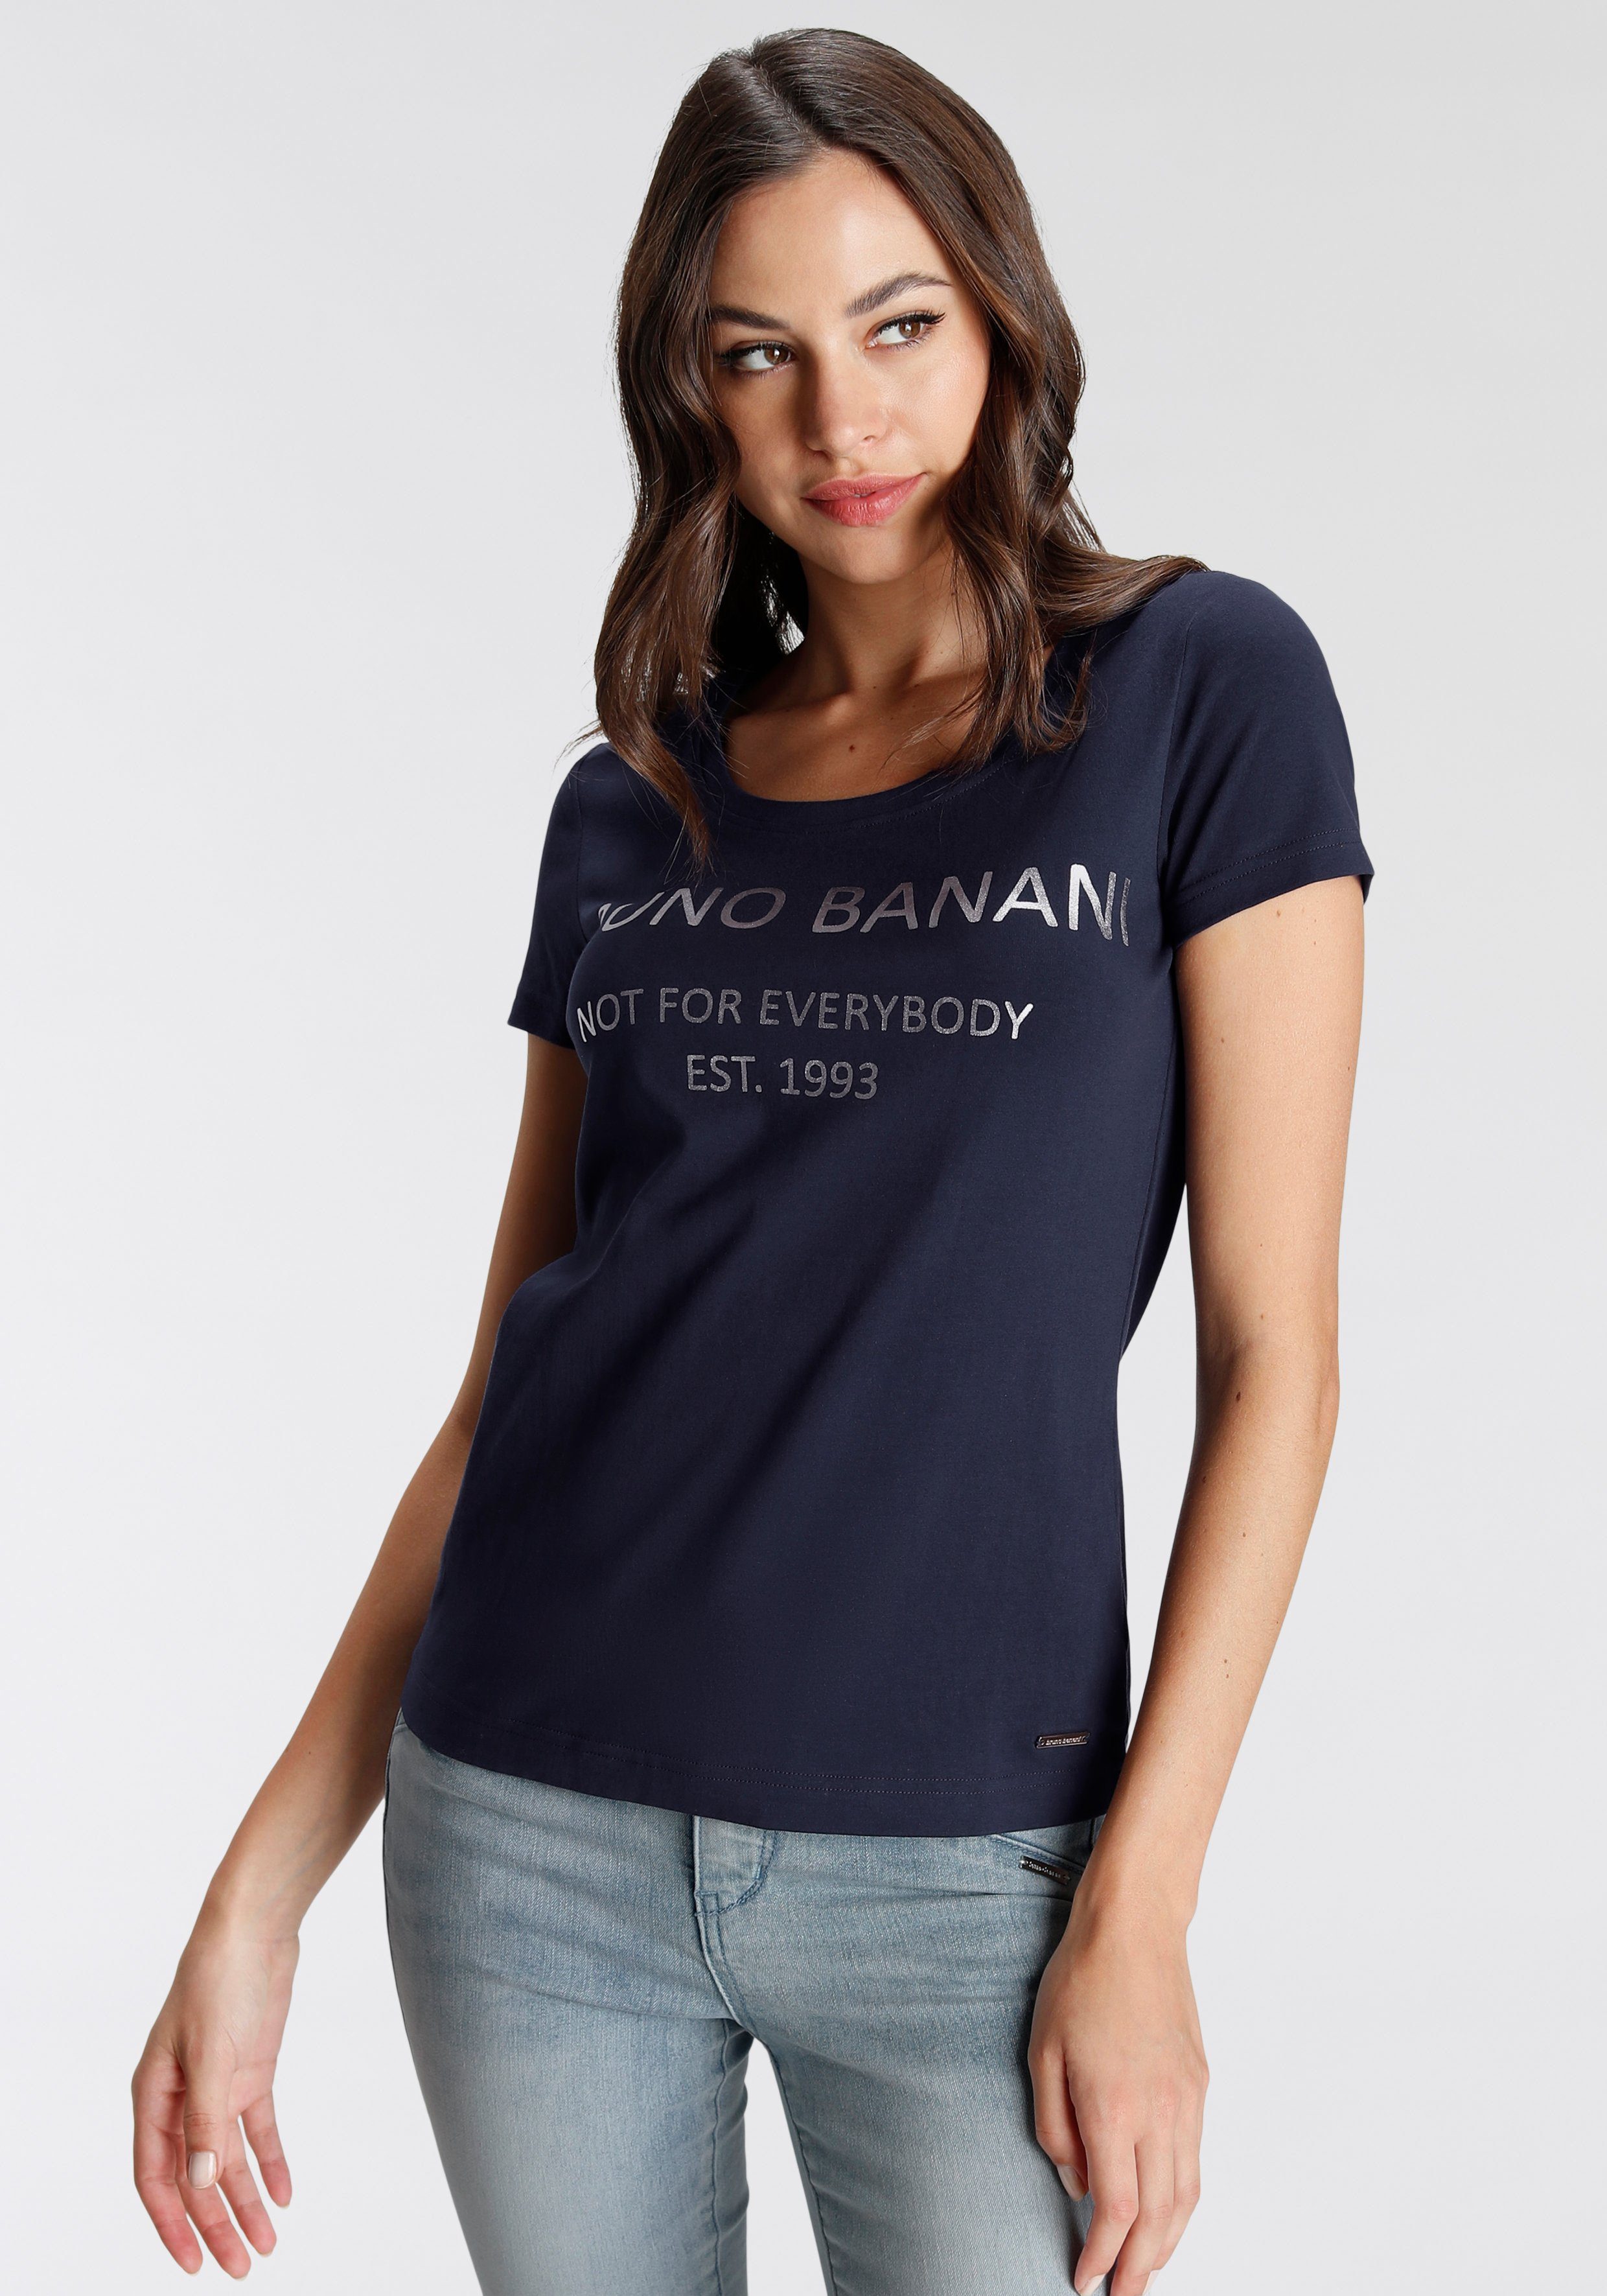 Bruno Banani T-Shirt marine Logodruck NEUE KOLLEKTION mit goldfarbenem